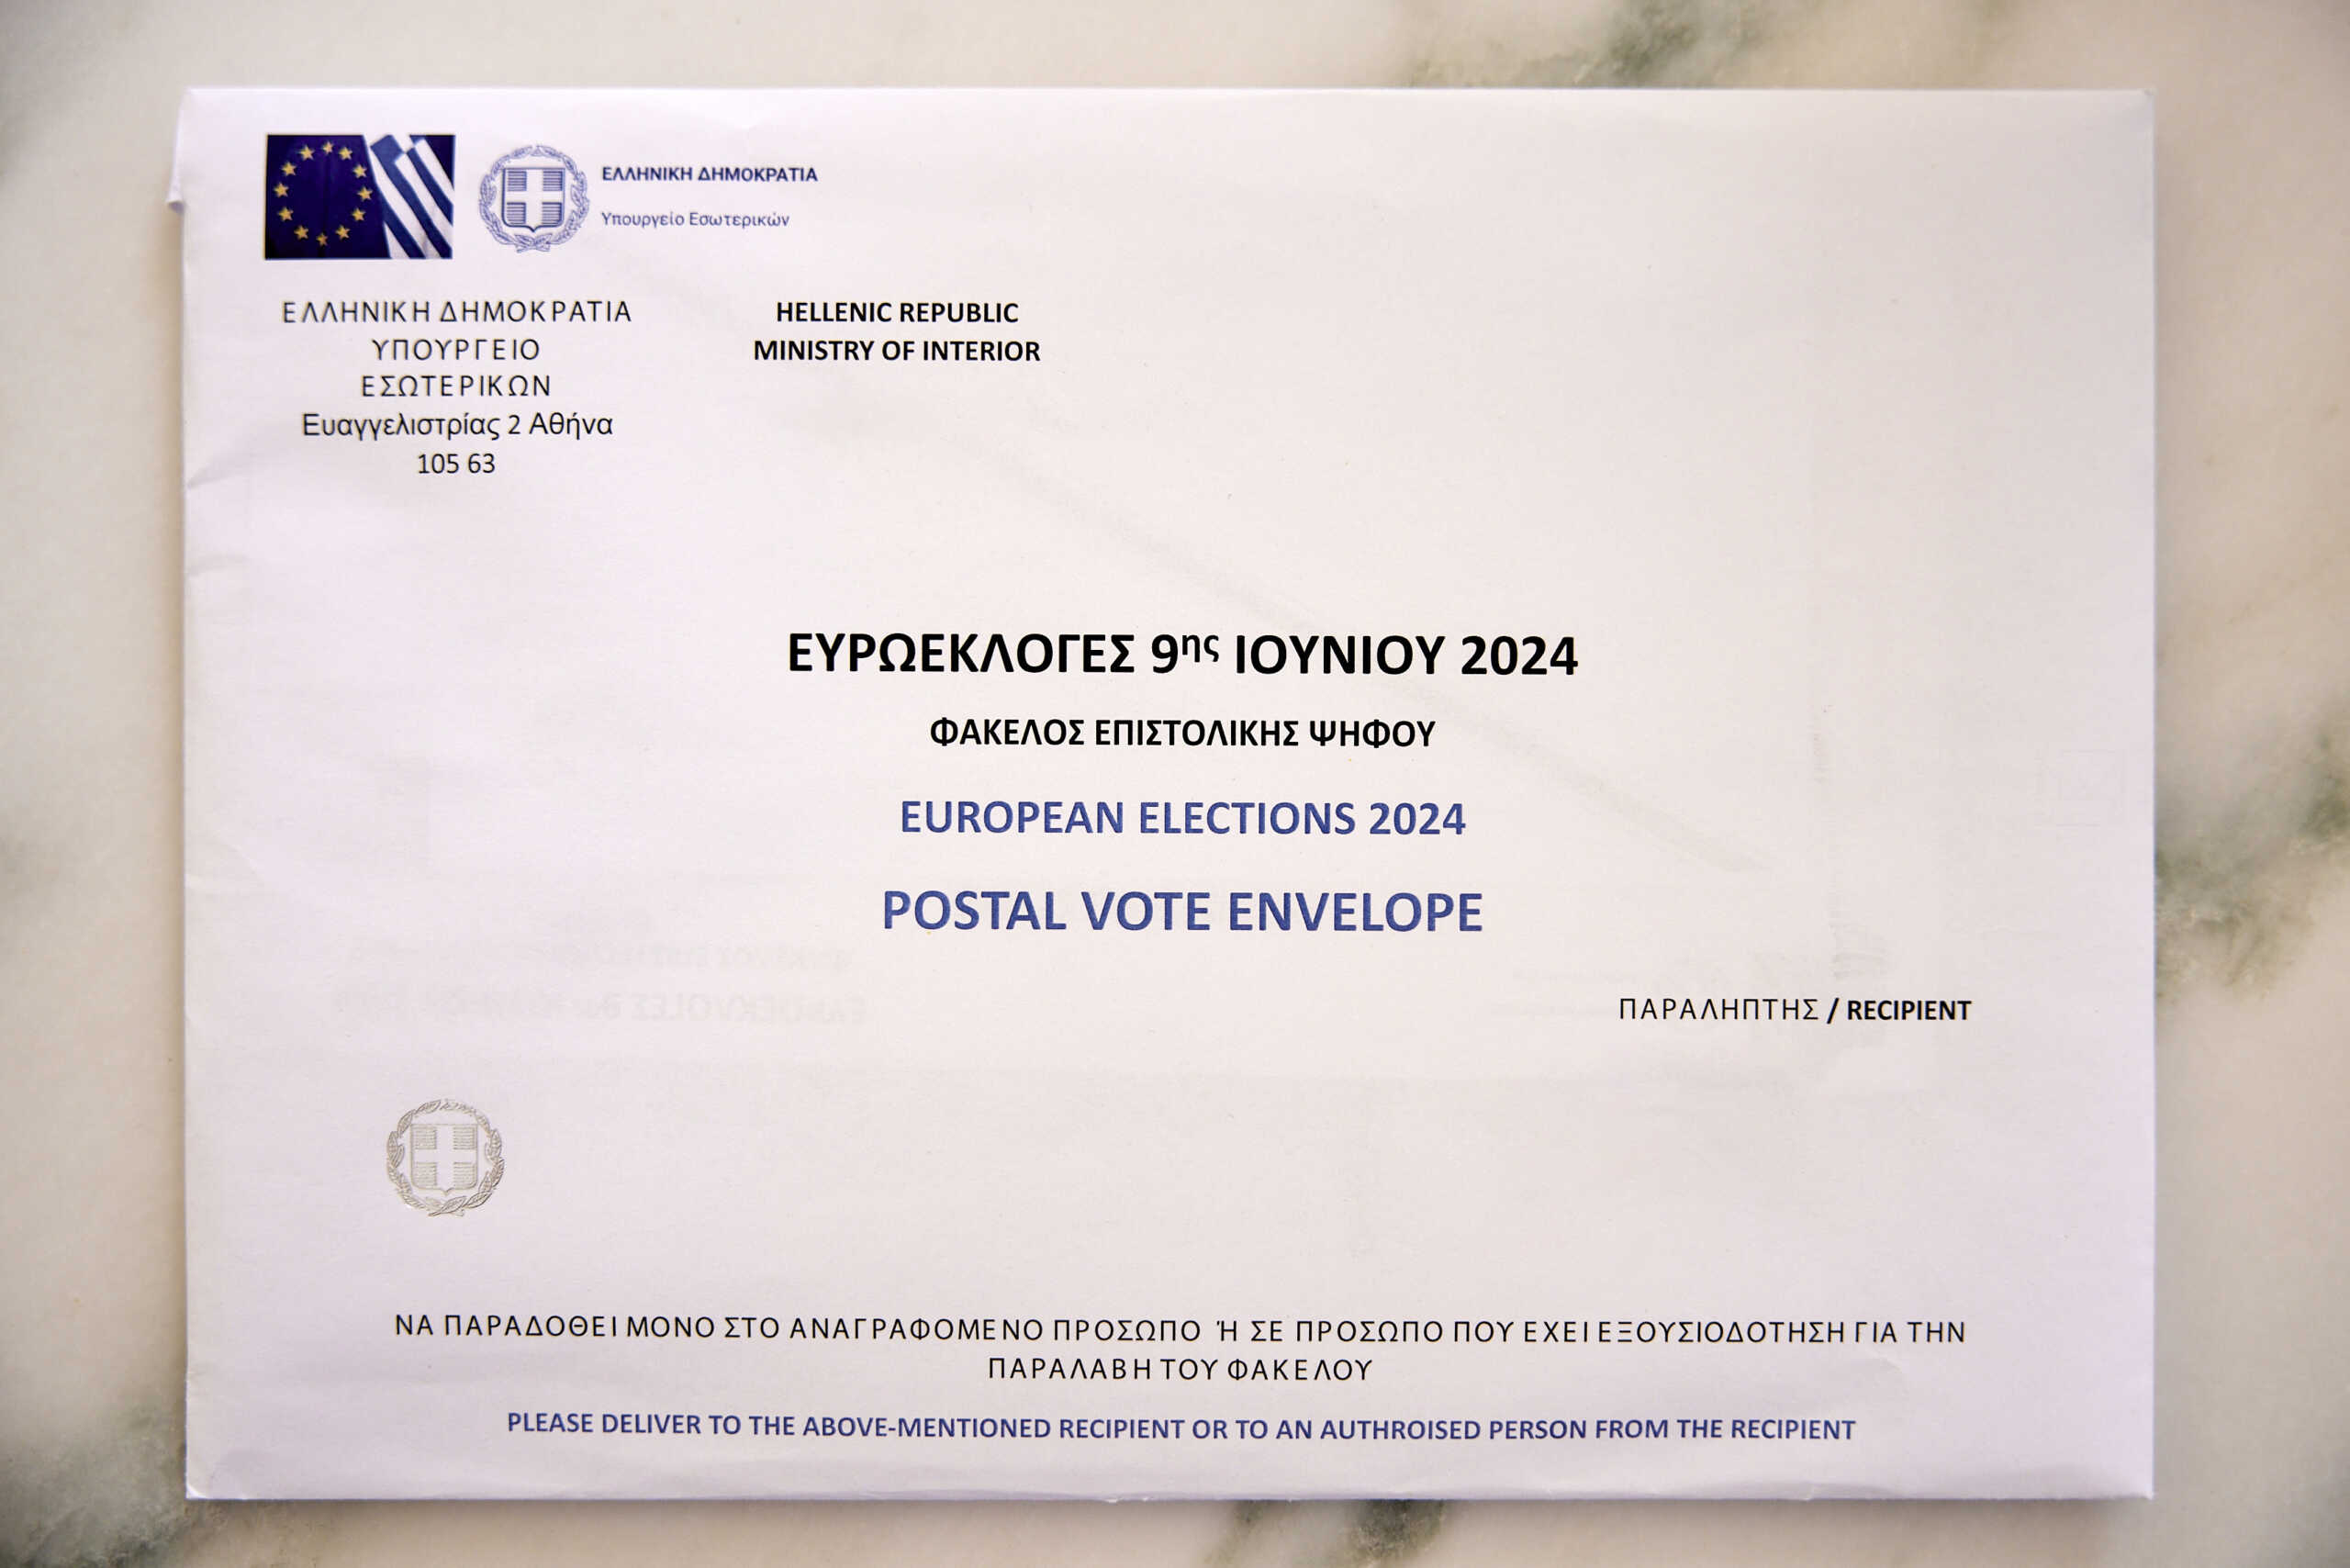 Επιστολική ψήφος: Σαράντα ημέρες πριν και μέσω gov.gr η επιλογή της